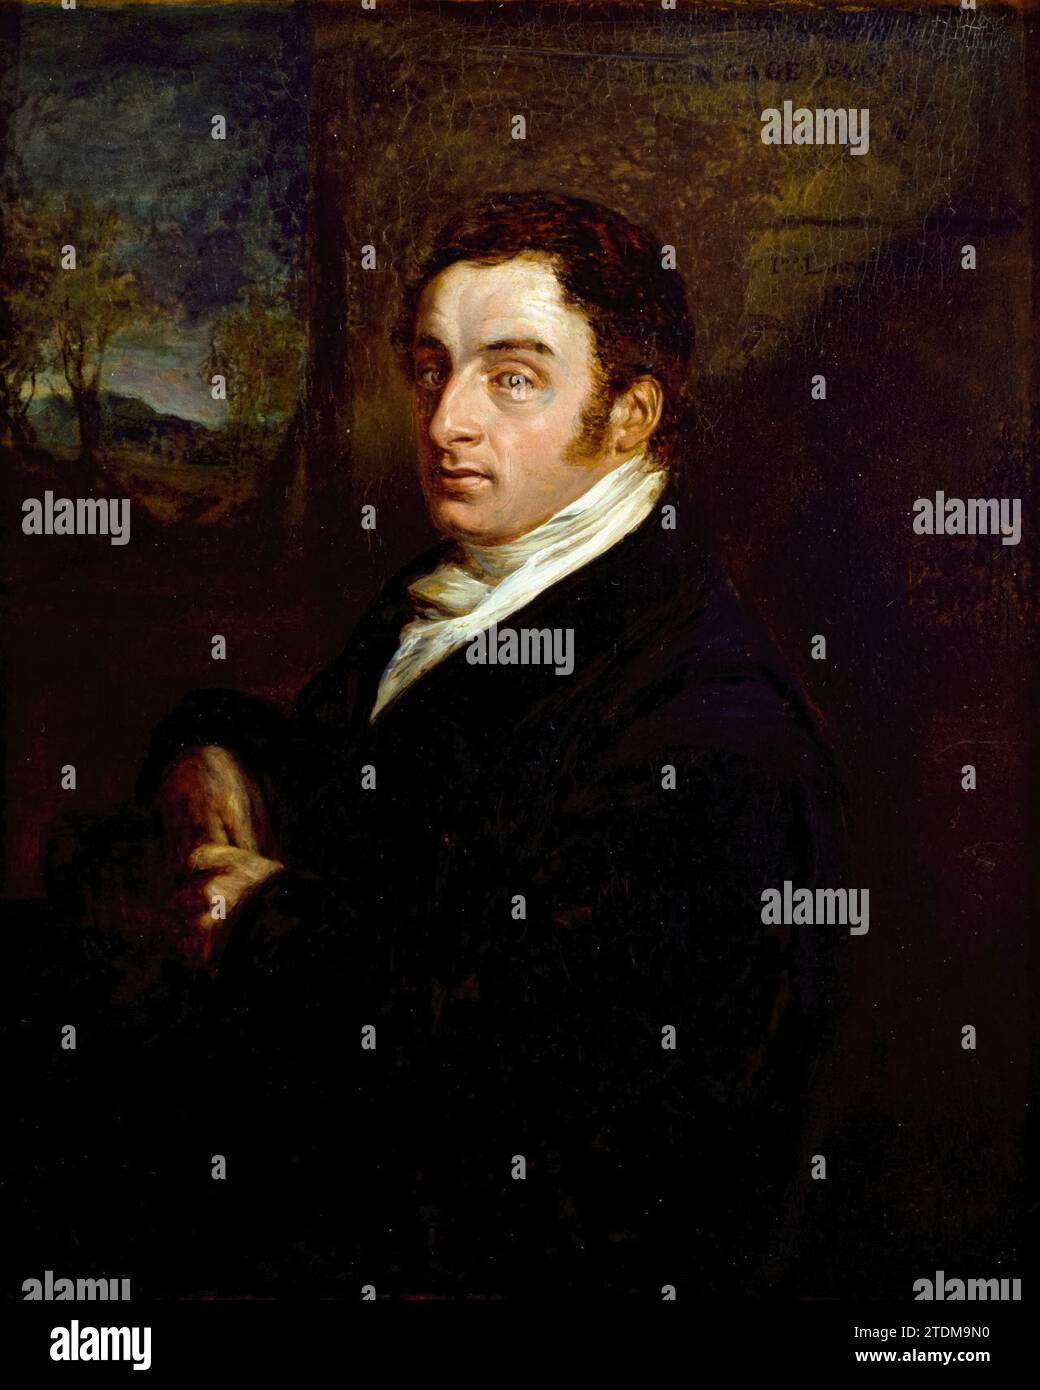 John Gage, portrait à l'huile sur carton par John Linnell, 1817 Banque D'Images